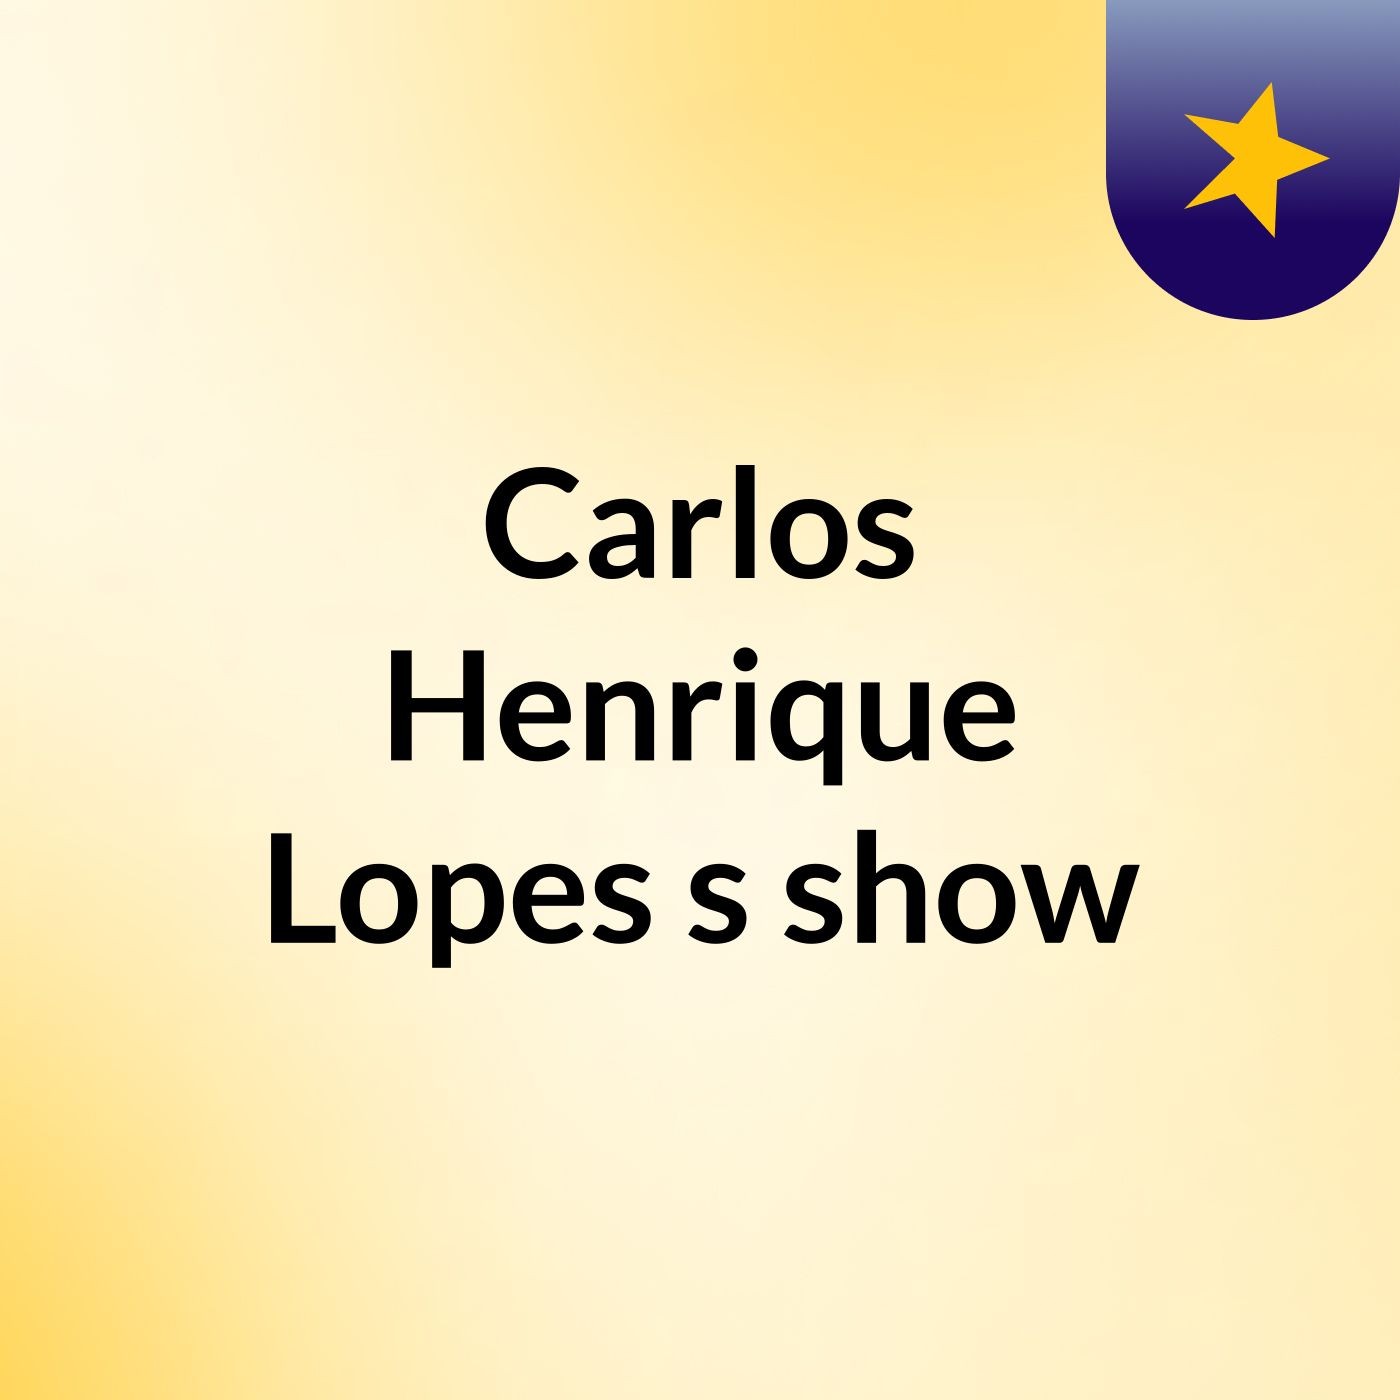 Carlos Henrique Lopes's show